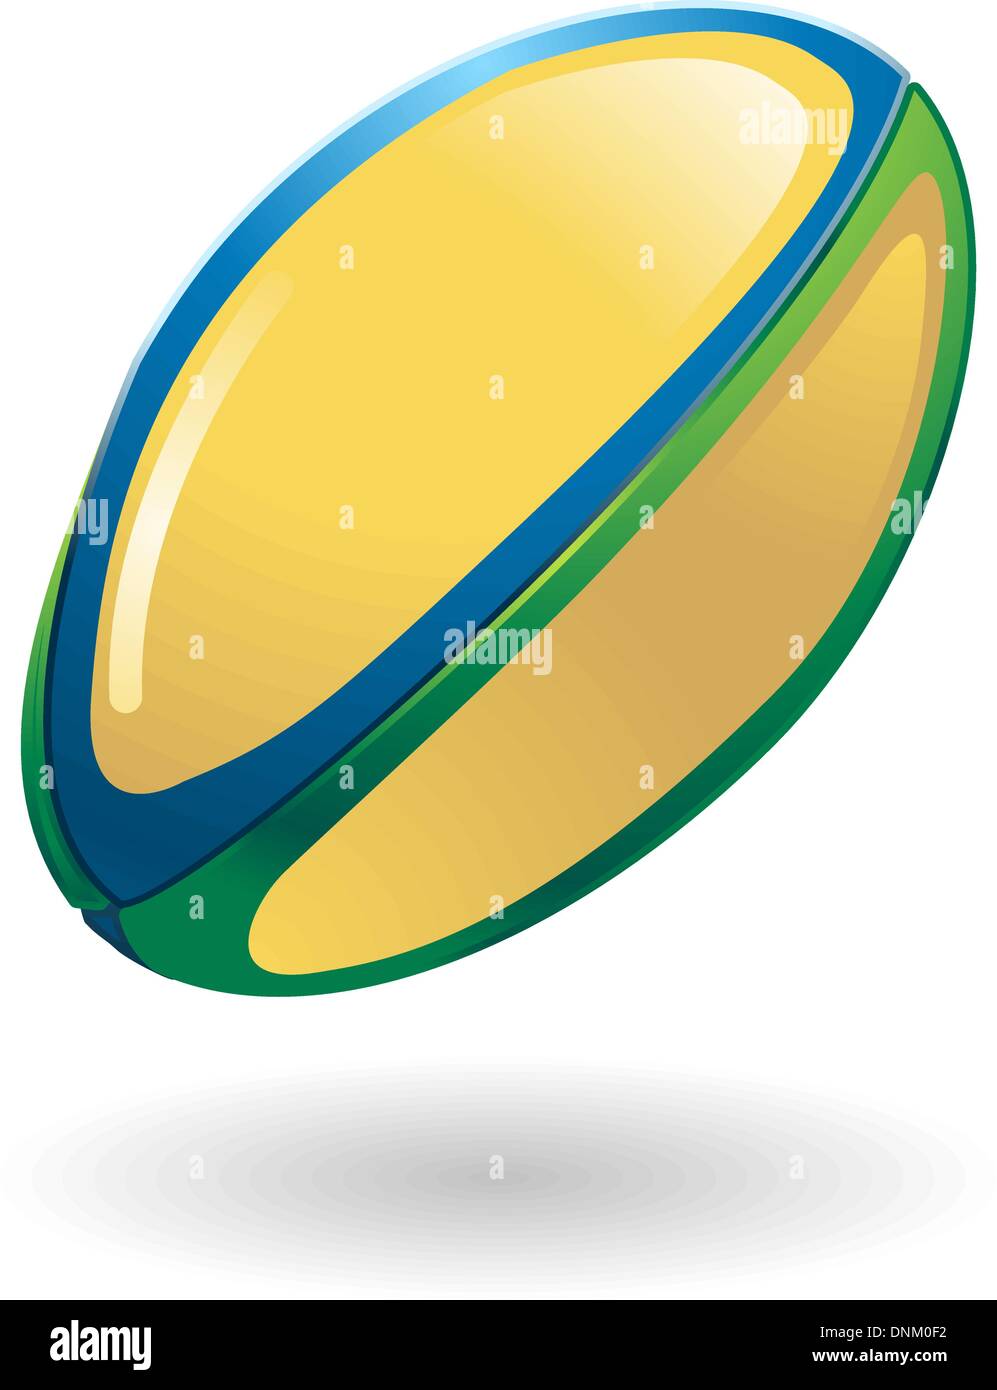 Abbildung von einem Rugby-ball Stock Vektor